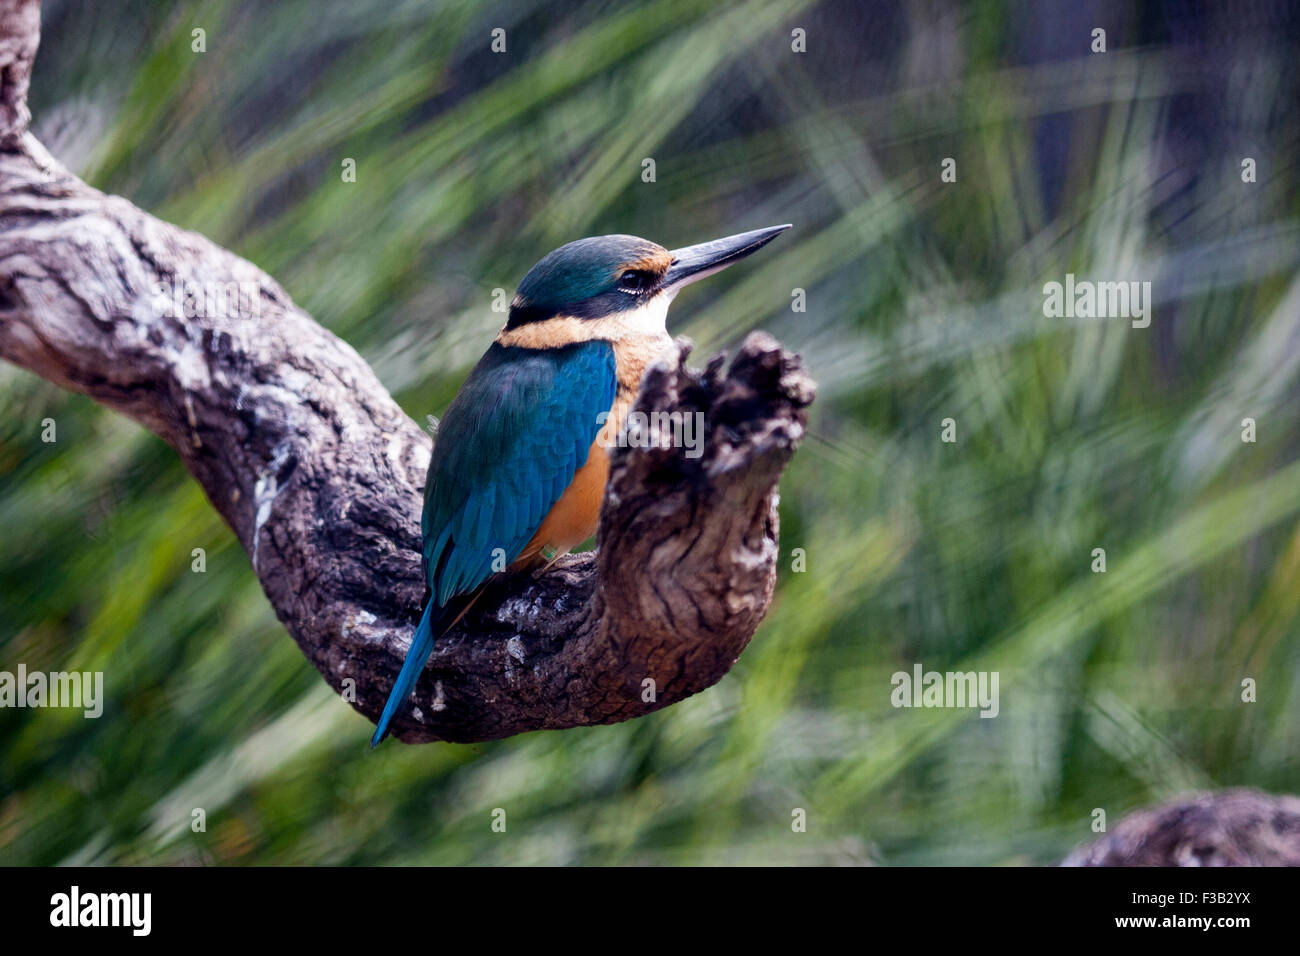 Australian kingfisher bird Stock Photo